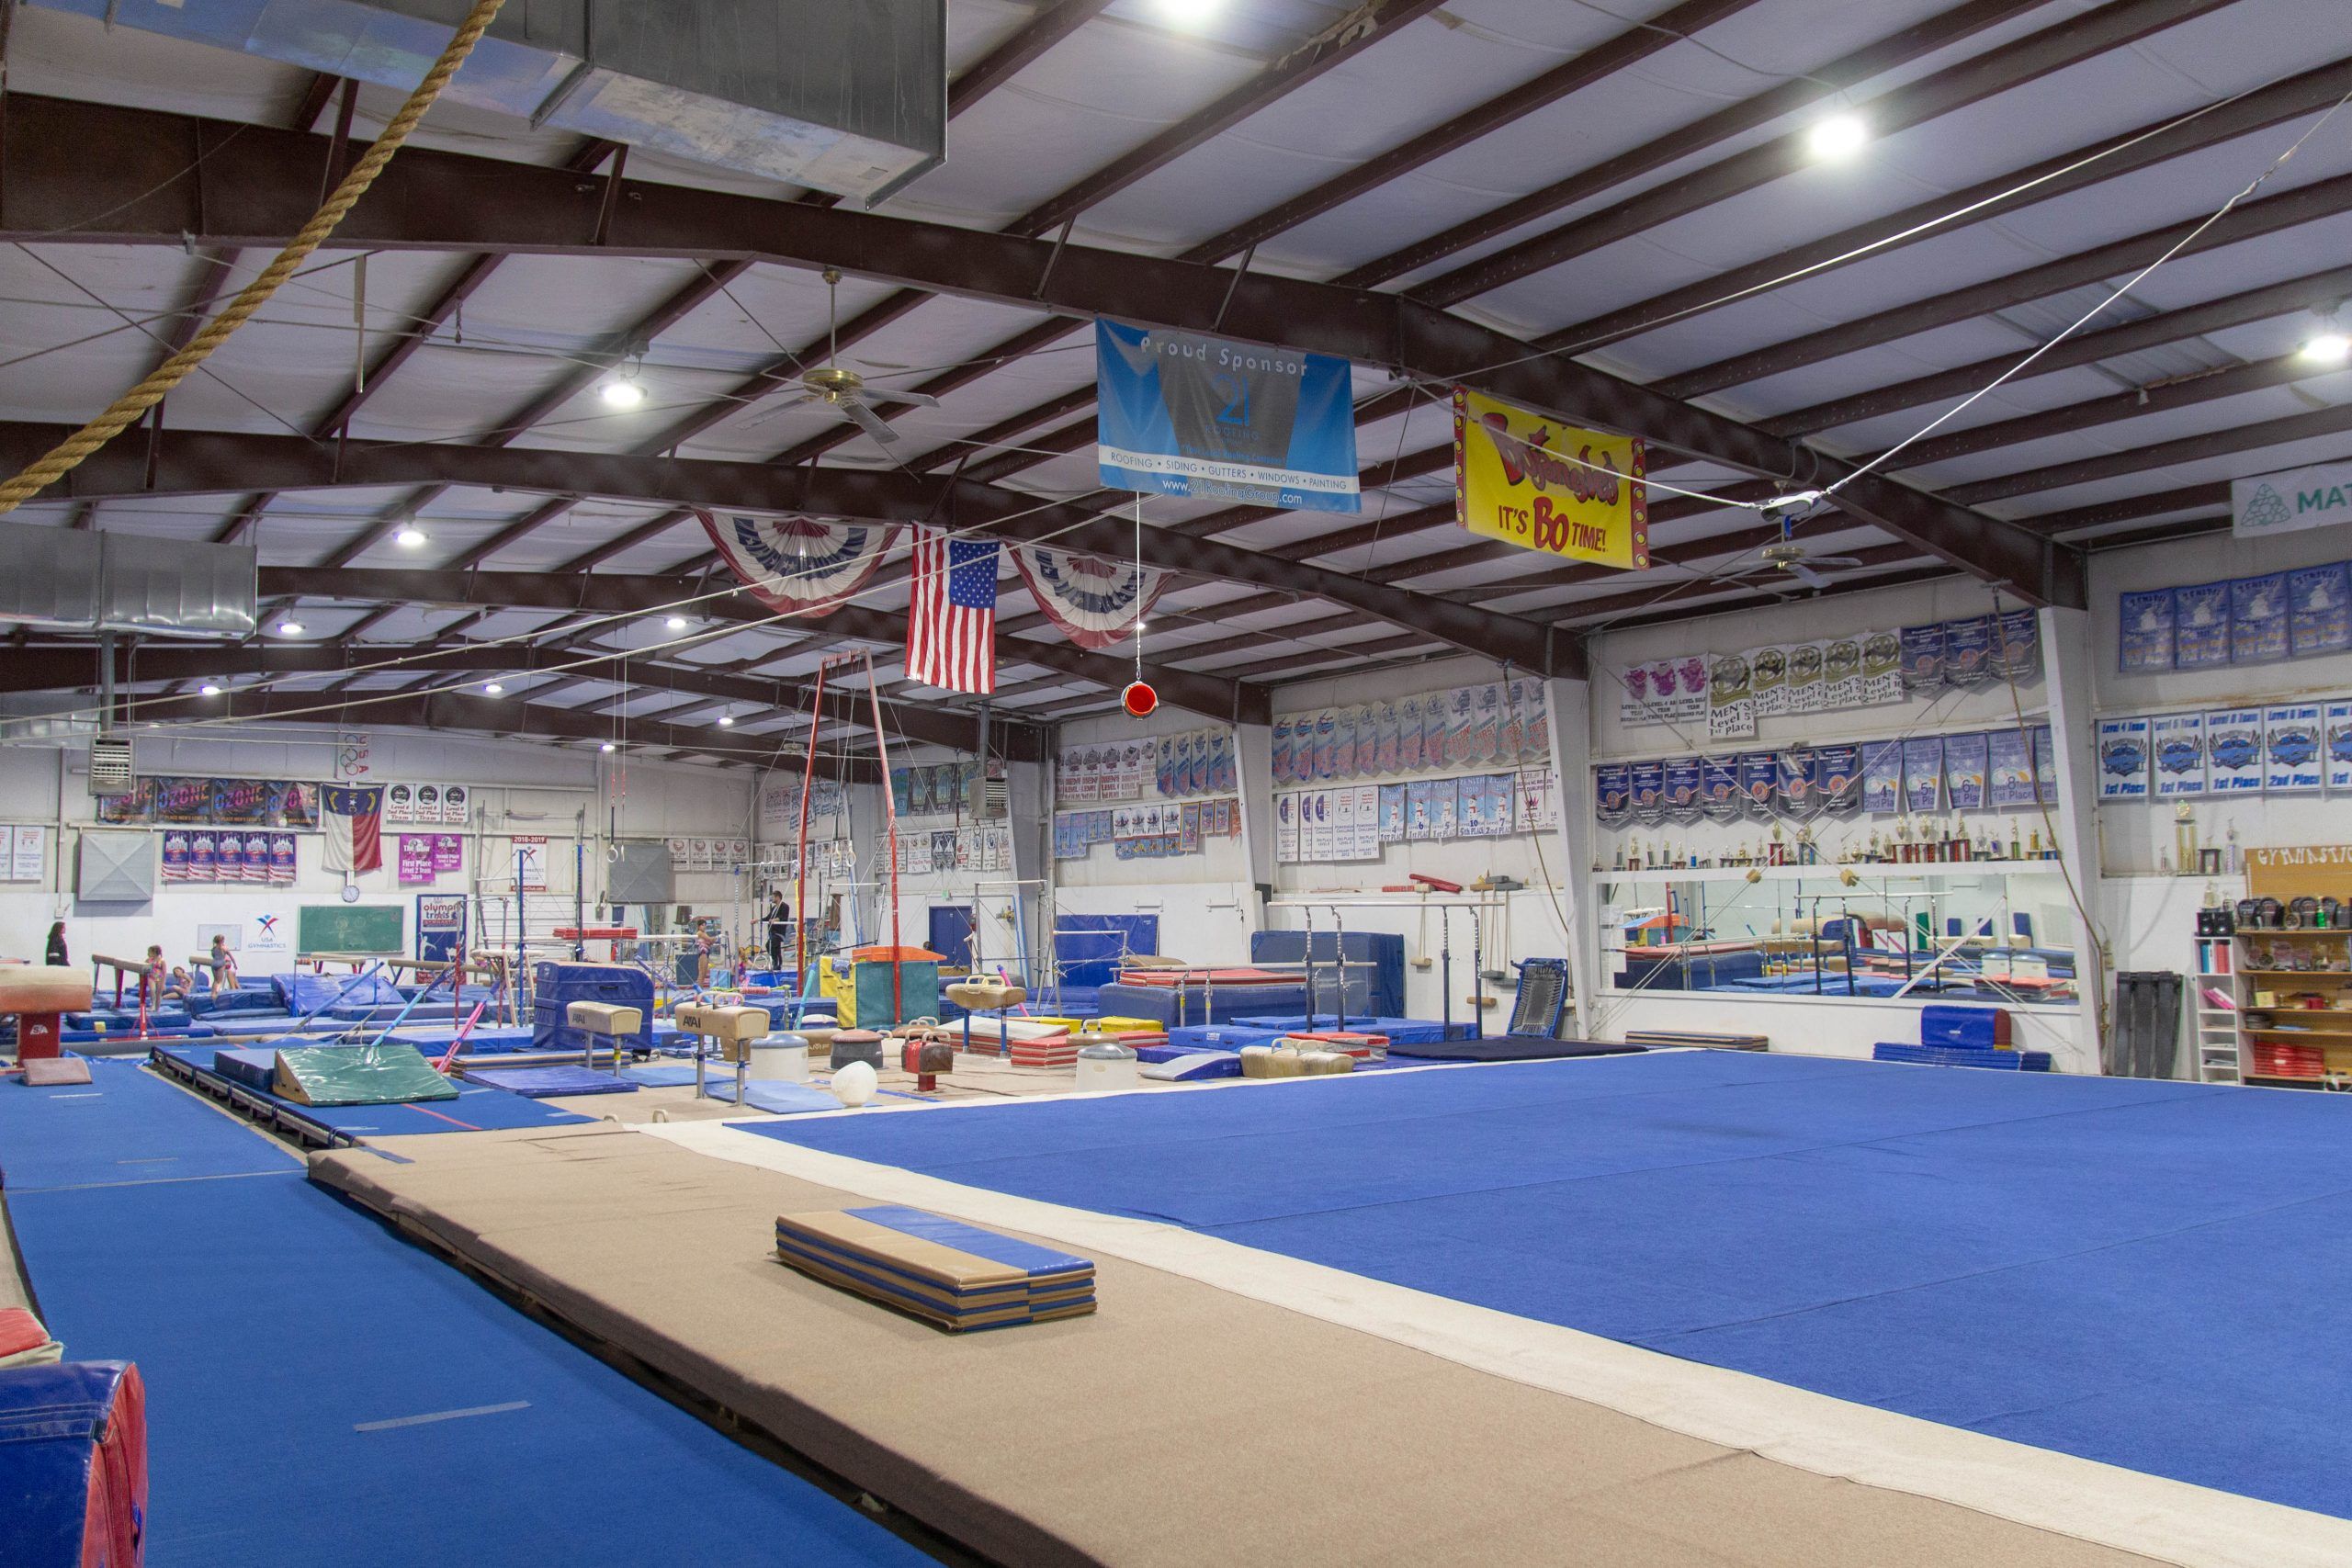 Zenith Gymnastics Floor With Equipment